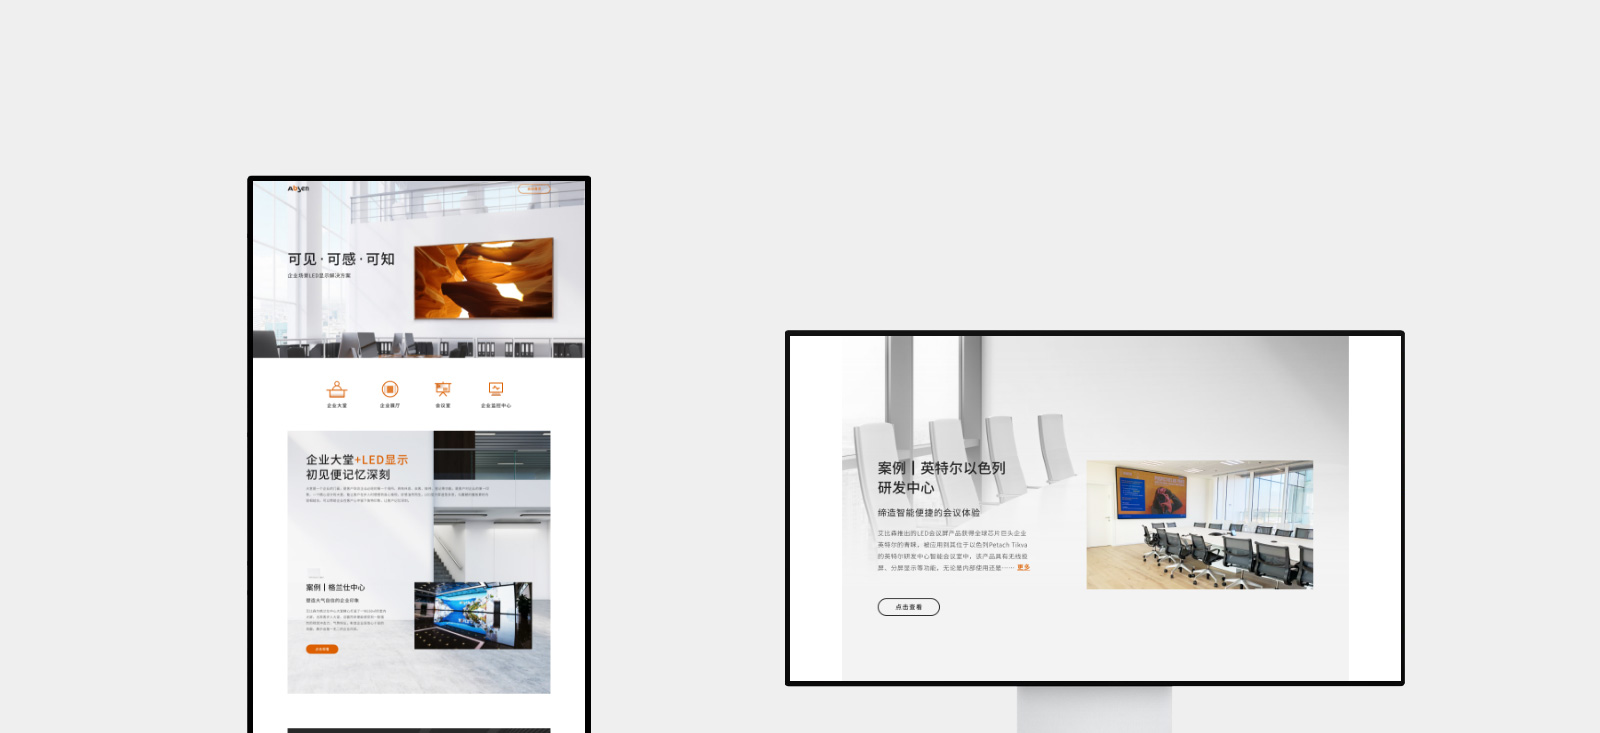 艾比森企业场景LED产品专题页网站0-素马设计作品